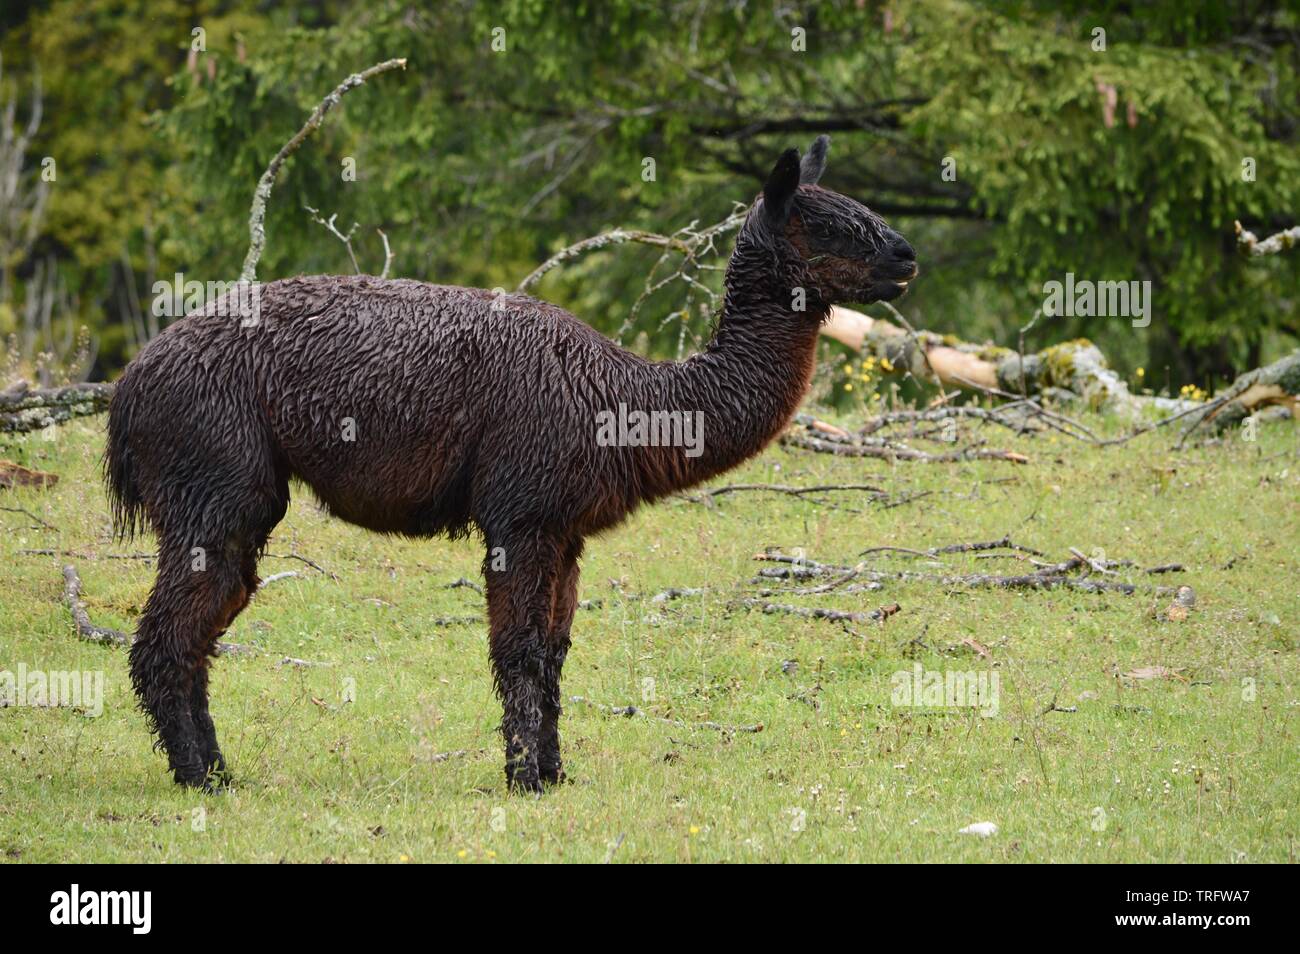 alpaca marrone scuro completamente bagnata in piedi nella pioggia battente in attesa di tempo migliore Foto Stock